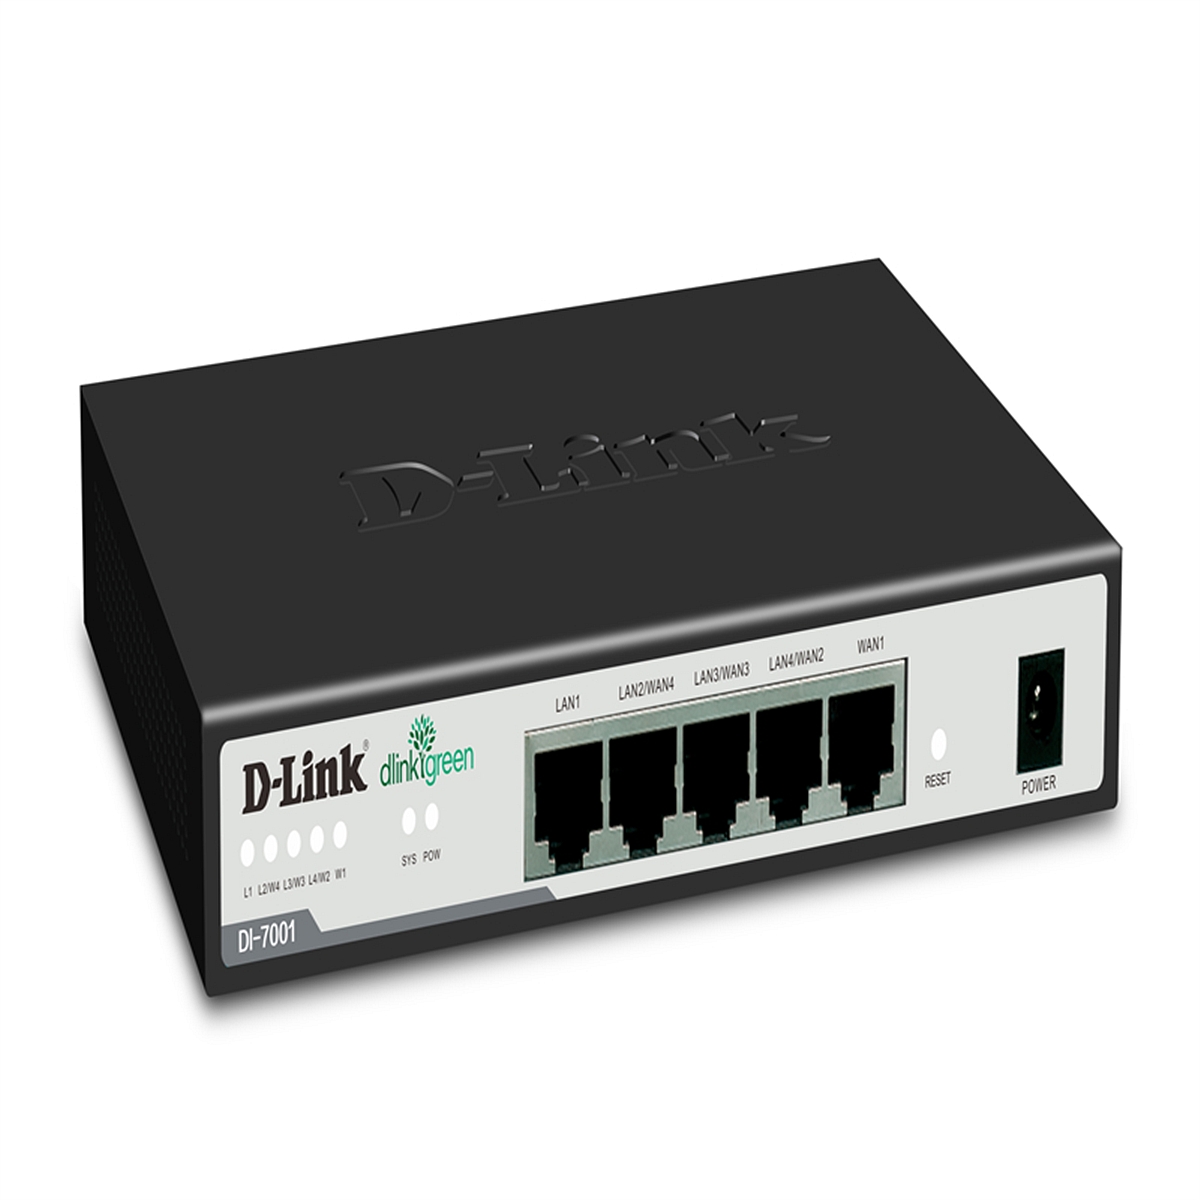 DLINK/DI-7001中小企业宽带路由器(个)